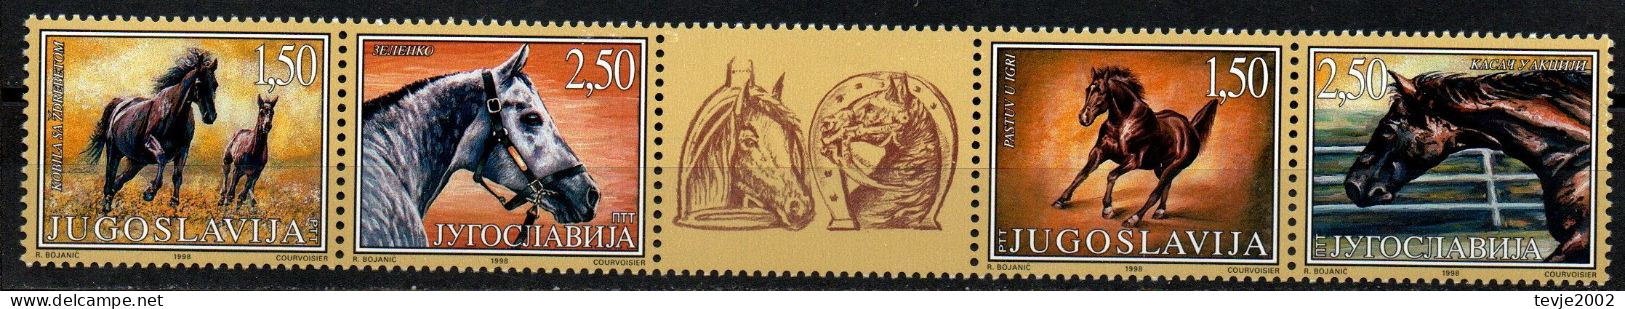 Jugoslawien 1998 - Mi.Nr. 2849 - 2852 - Postfrisch MNH - Tiere Animals Pferde Horses - Chevaux